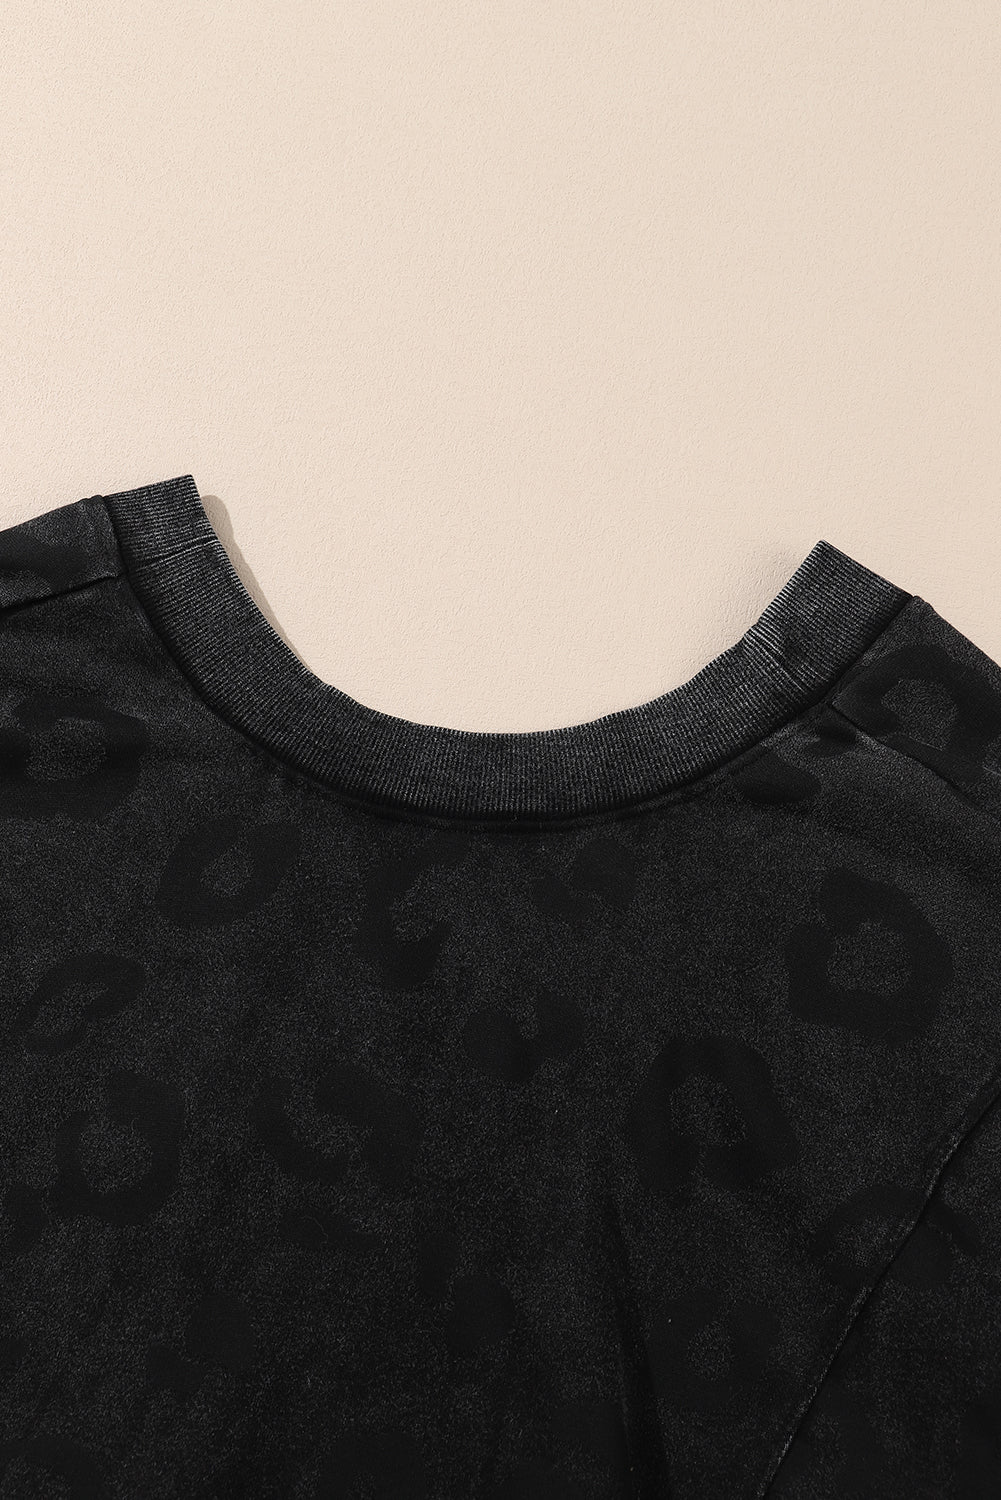 Karbonsko siva majica s leopard printom širokog kroja